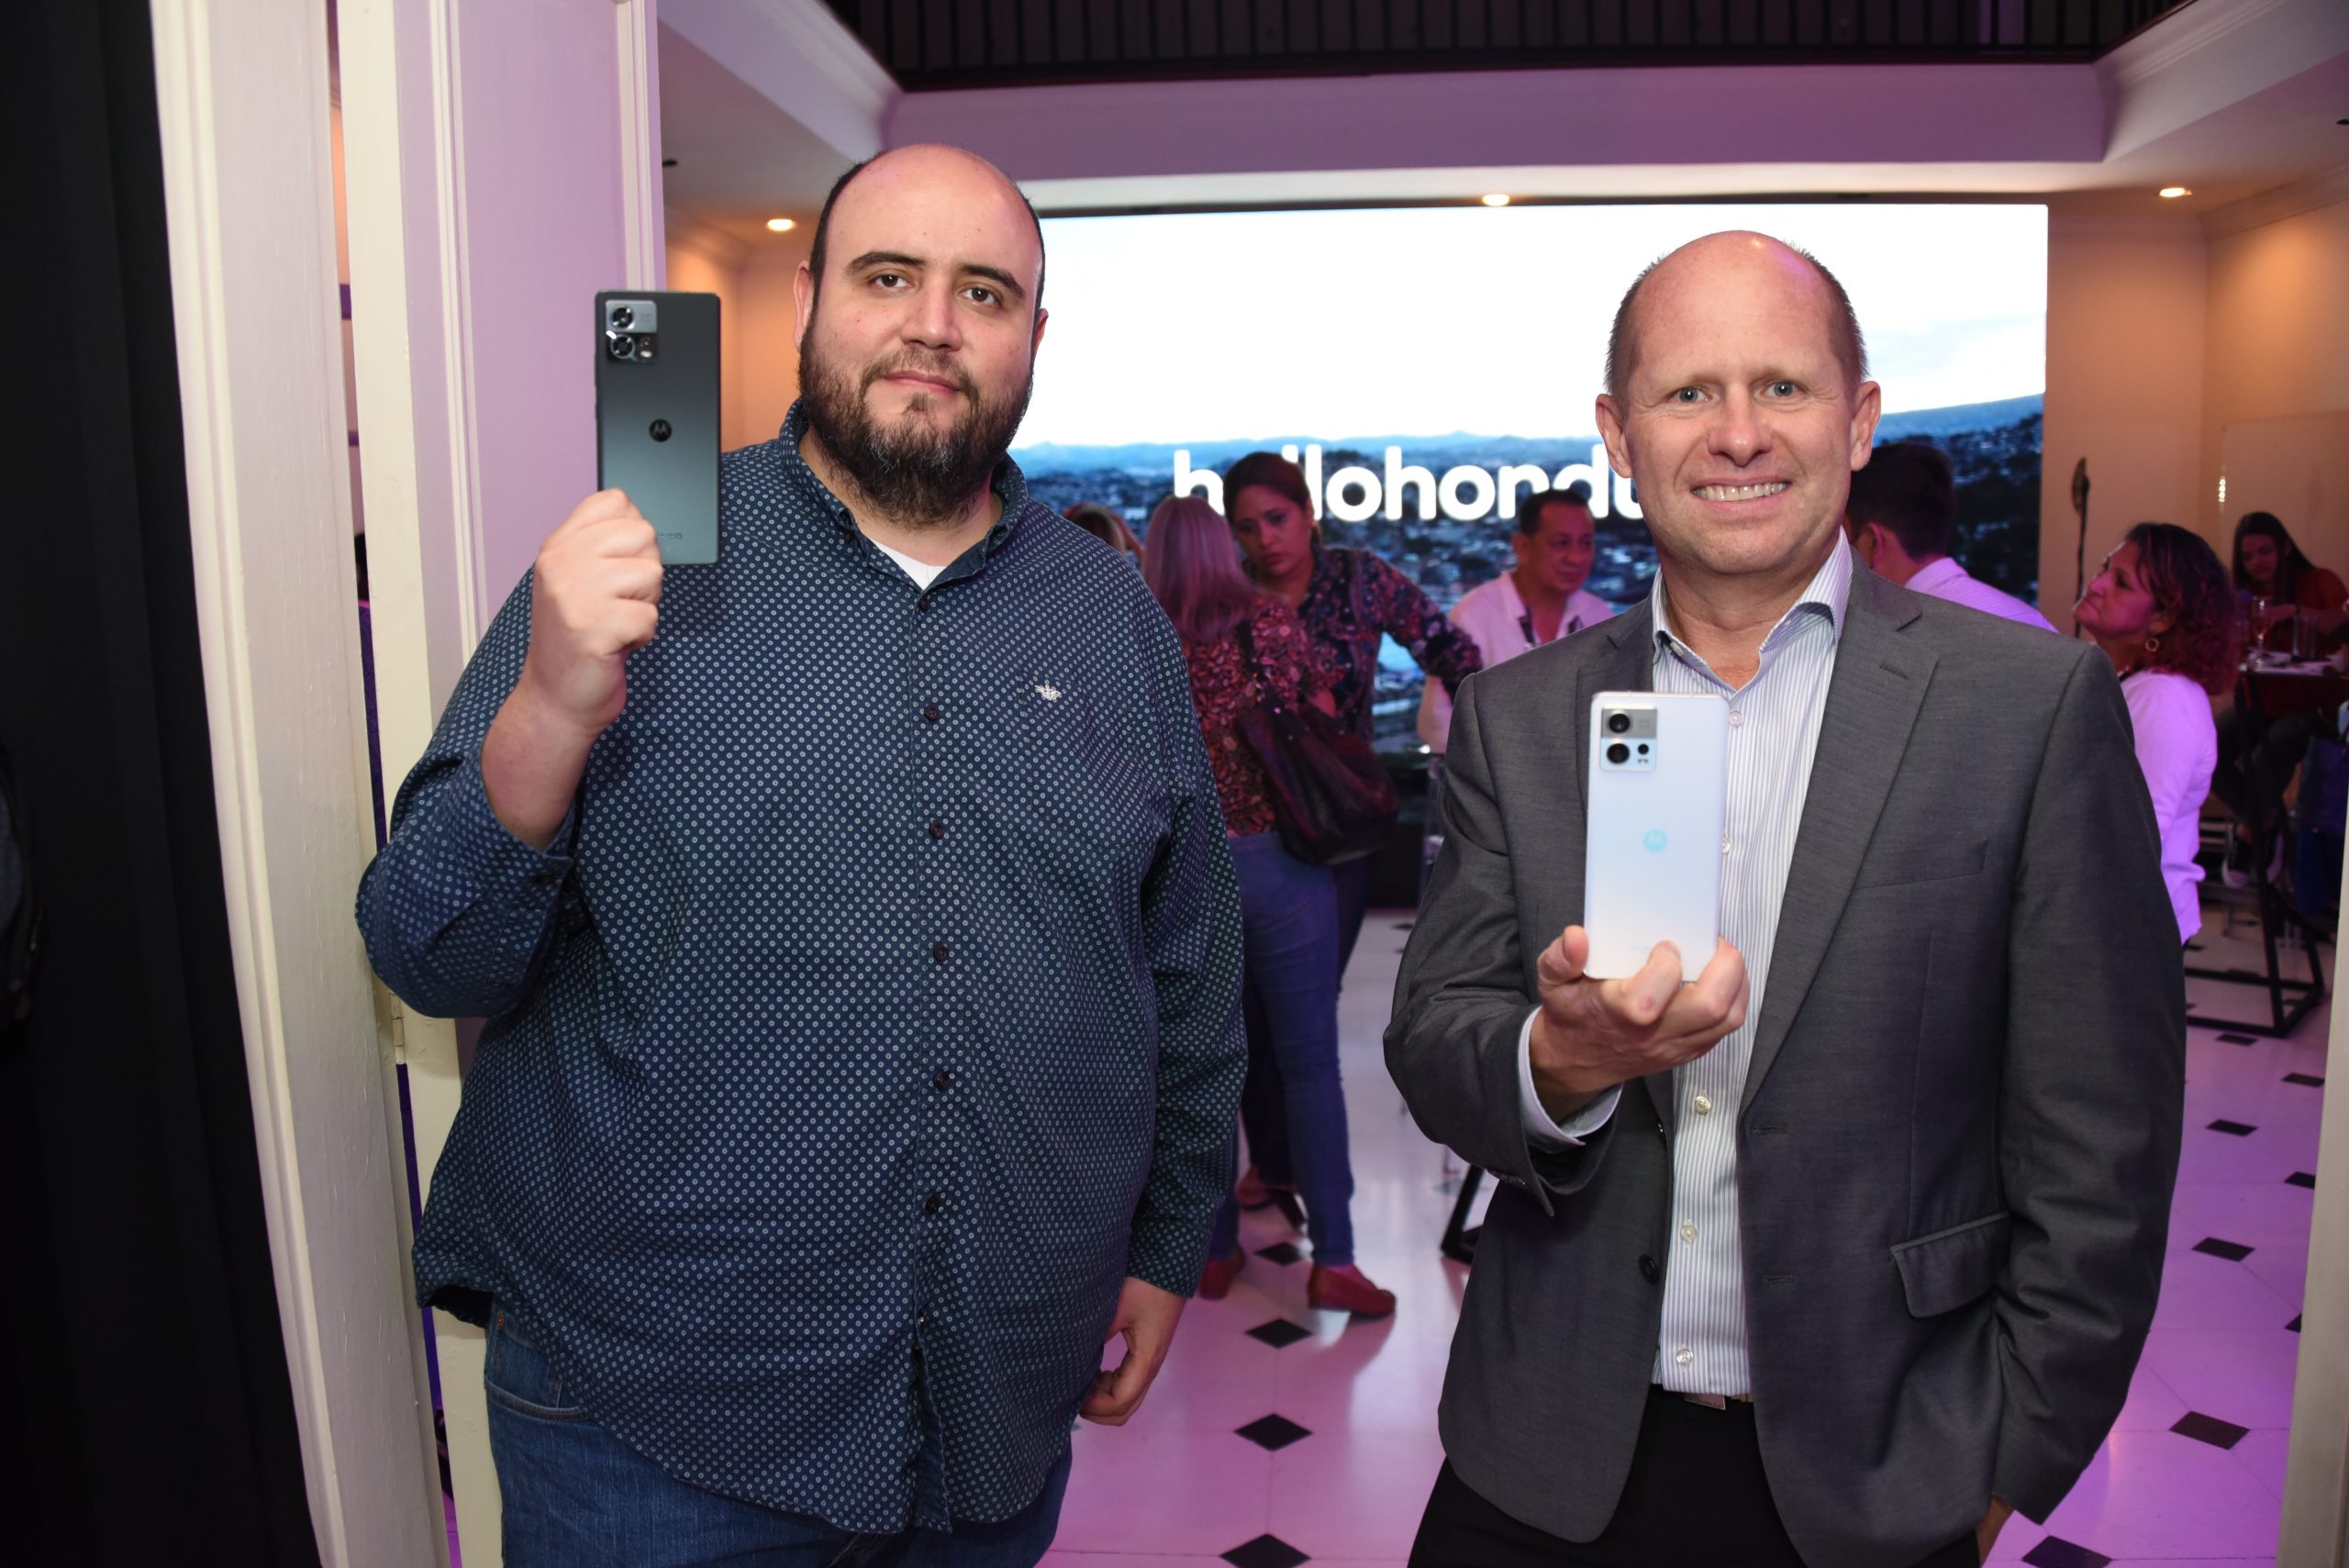 Motorola levanta su apuesta en el segmento premium en Honduras con el lanzamiento de los nuevos Motorola Edge, disponibles con Jetstereo